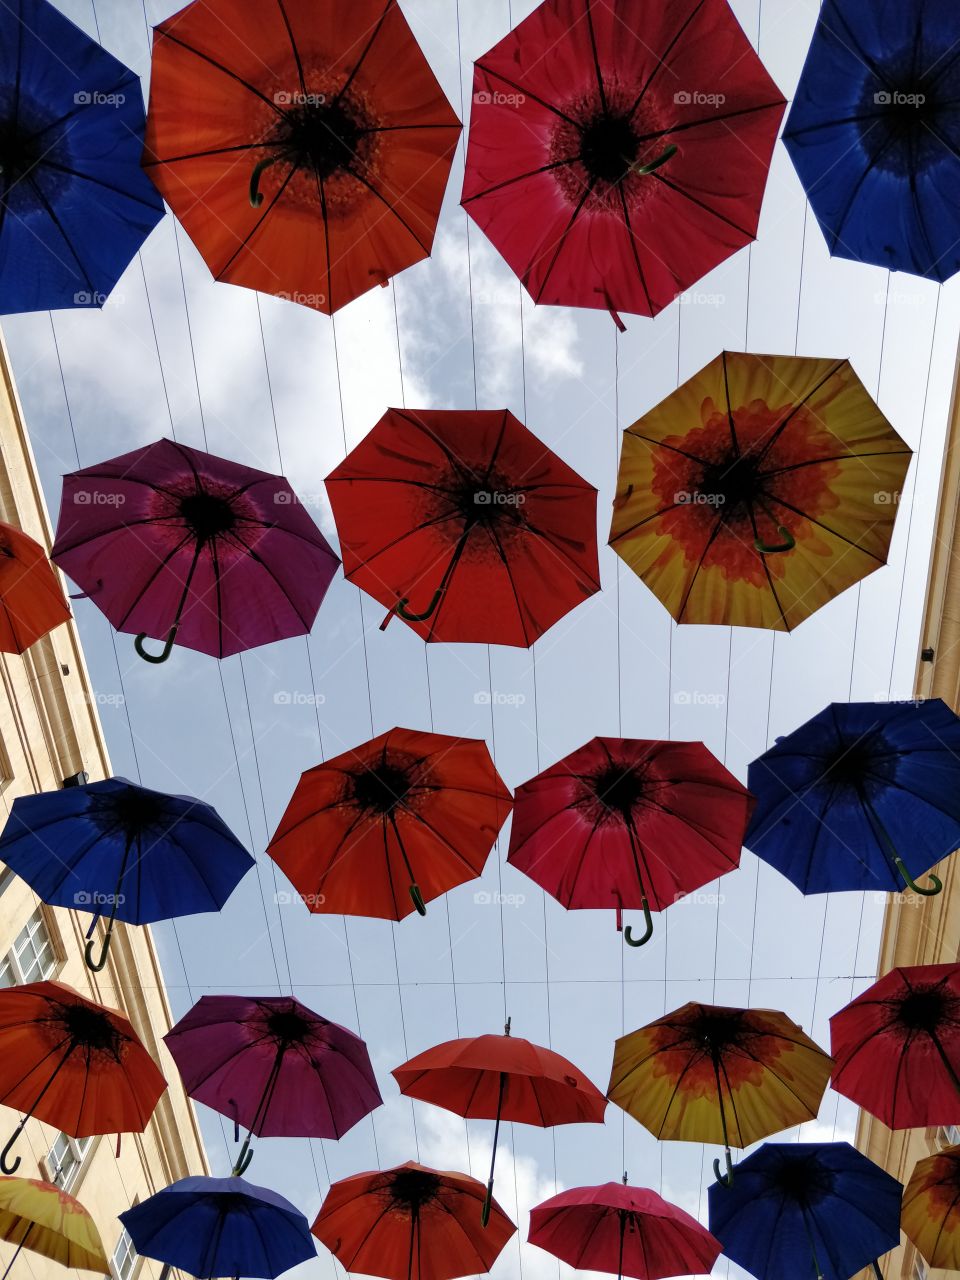 Colourful umbrellas in Bath, UK